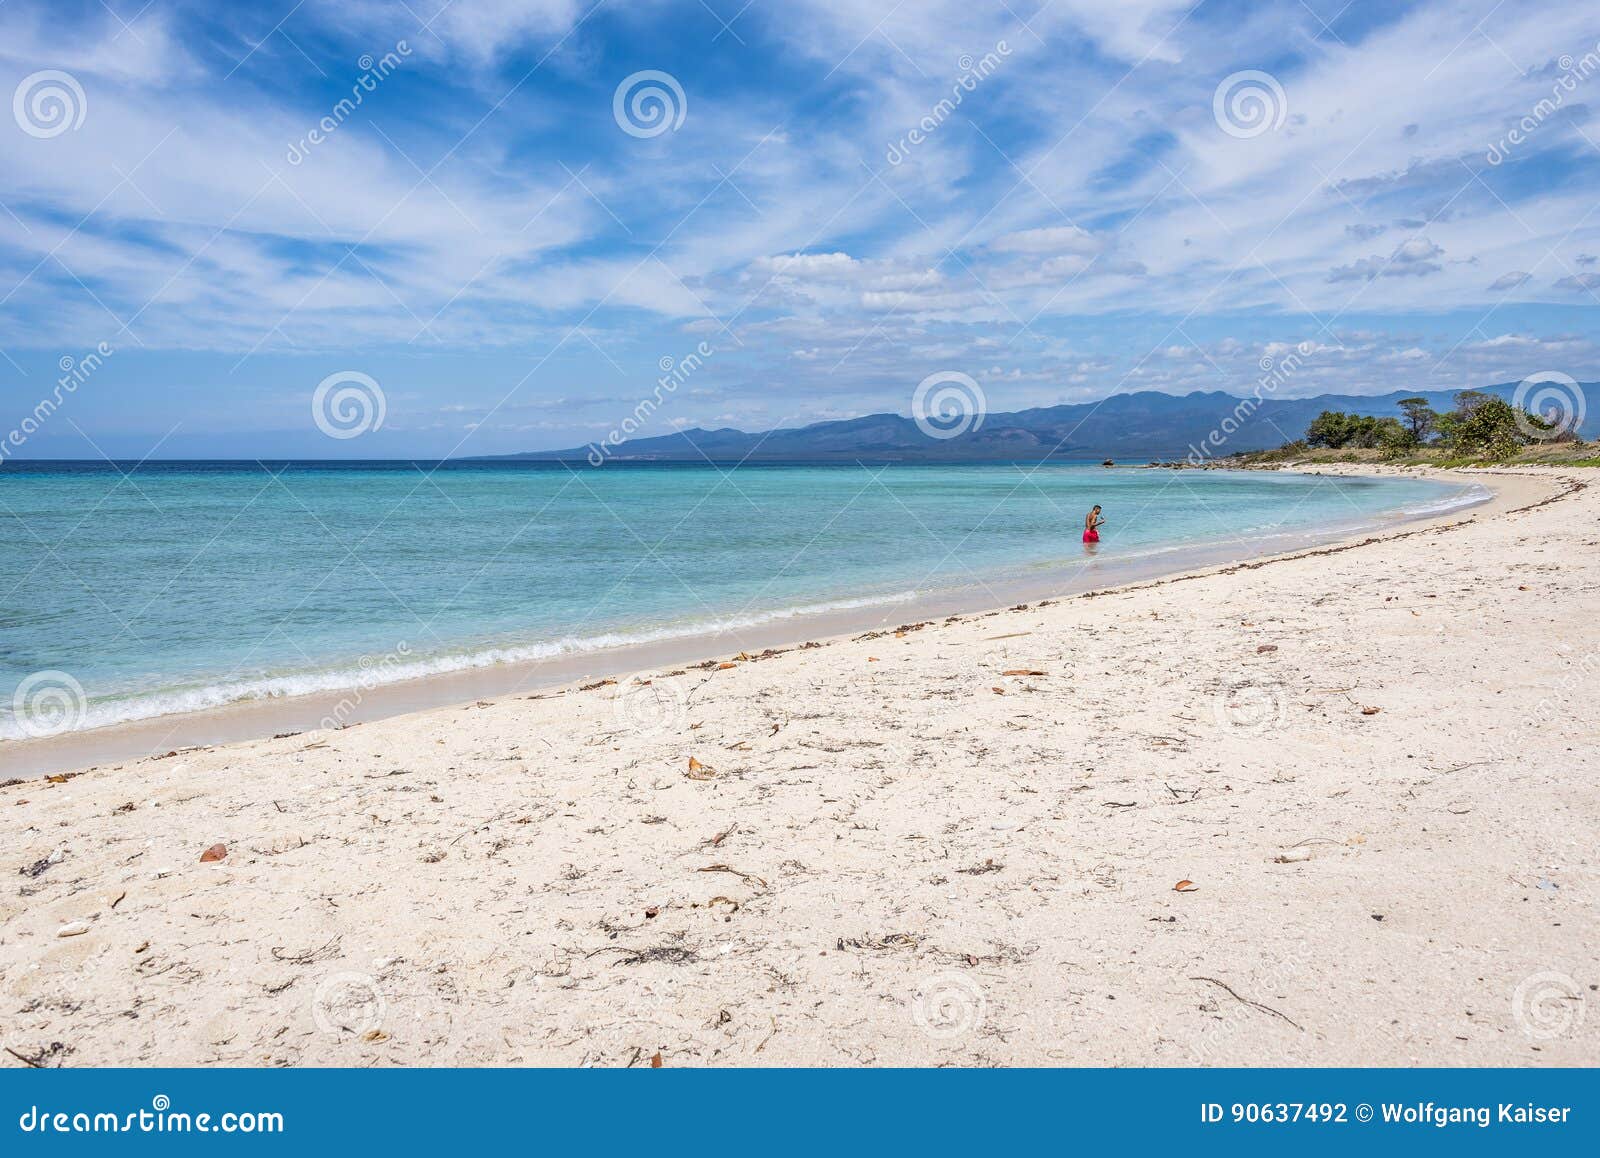 ancon beach, trinidad, cuba